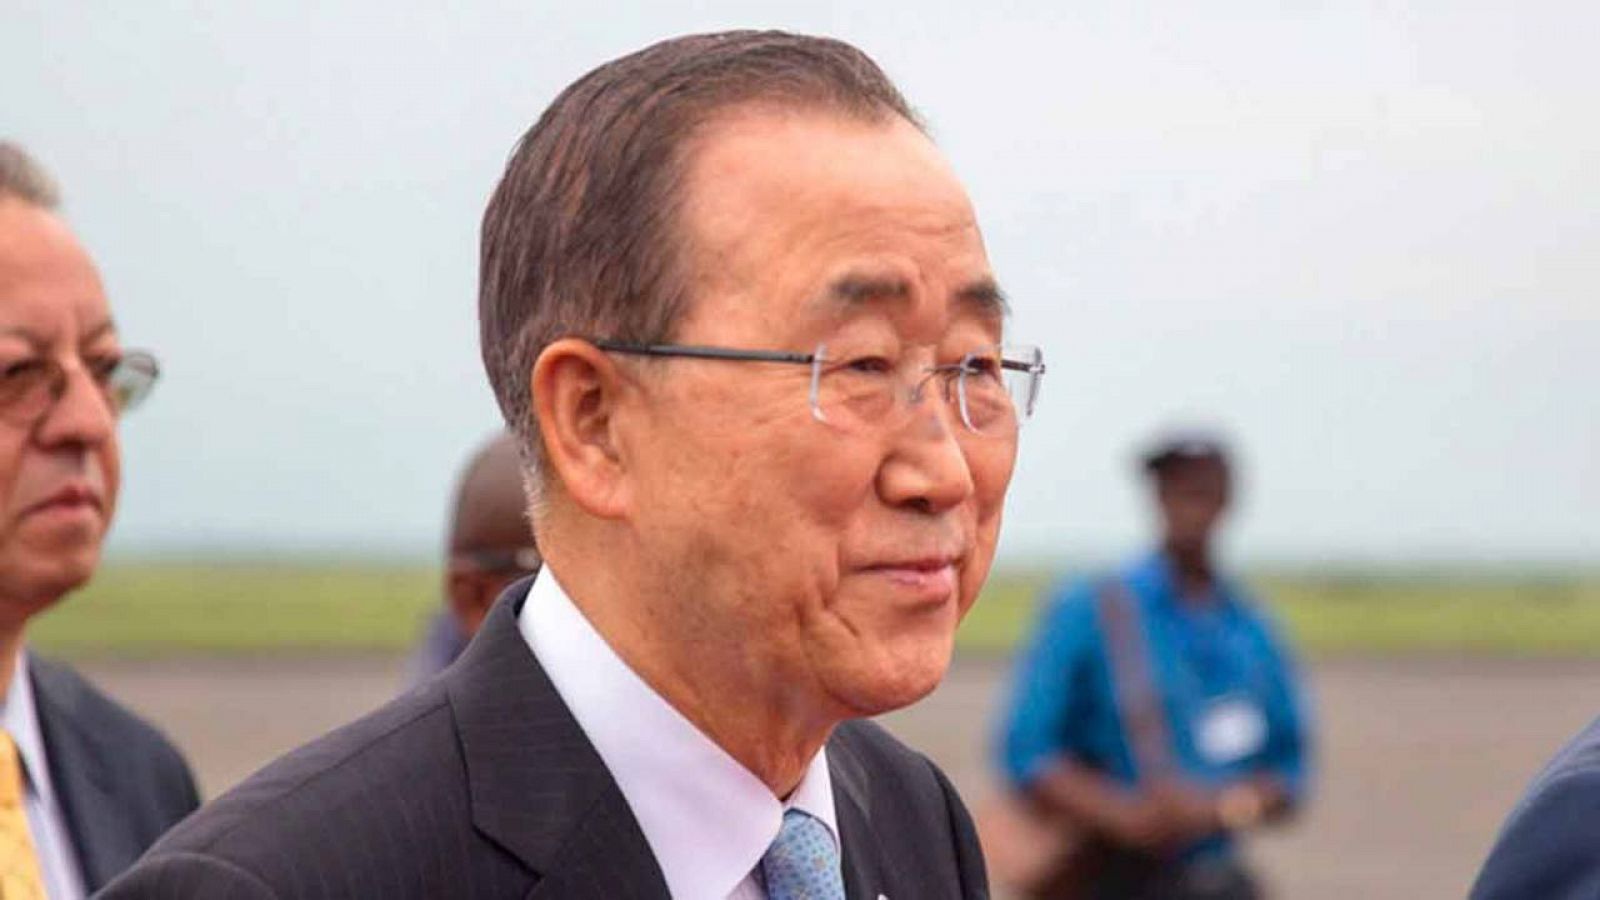 Imagen de archivo del secretario general de la ONU, Ban Ki-moon.